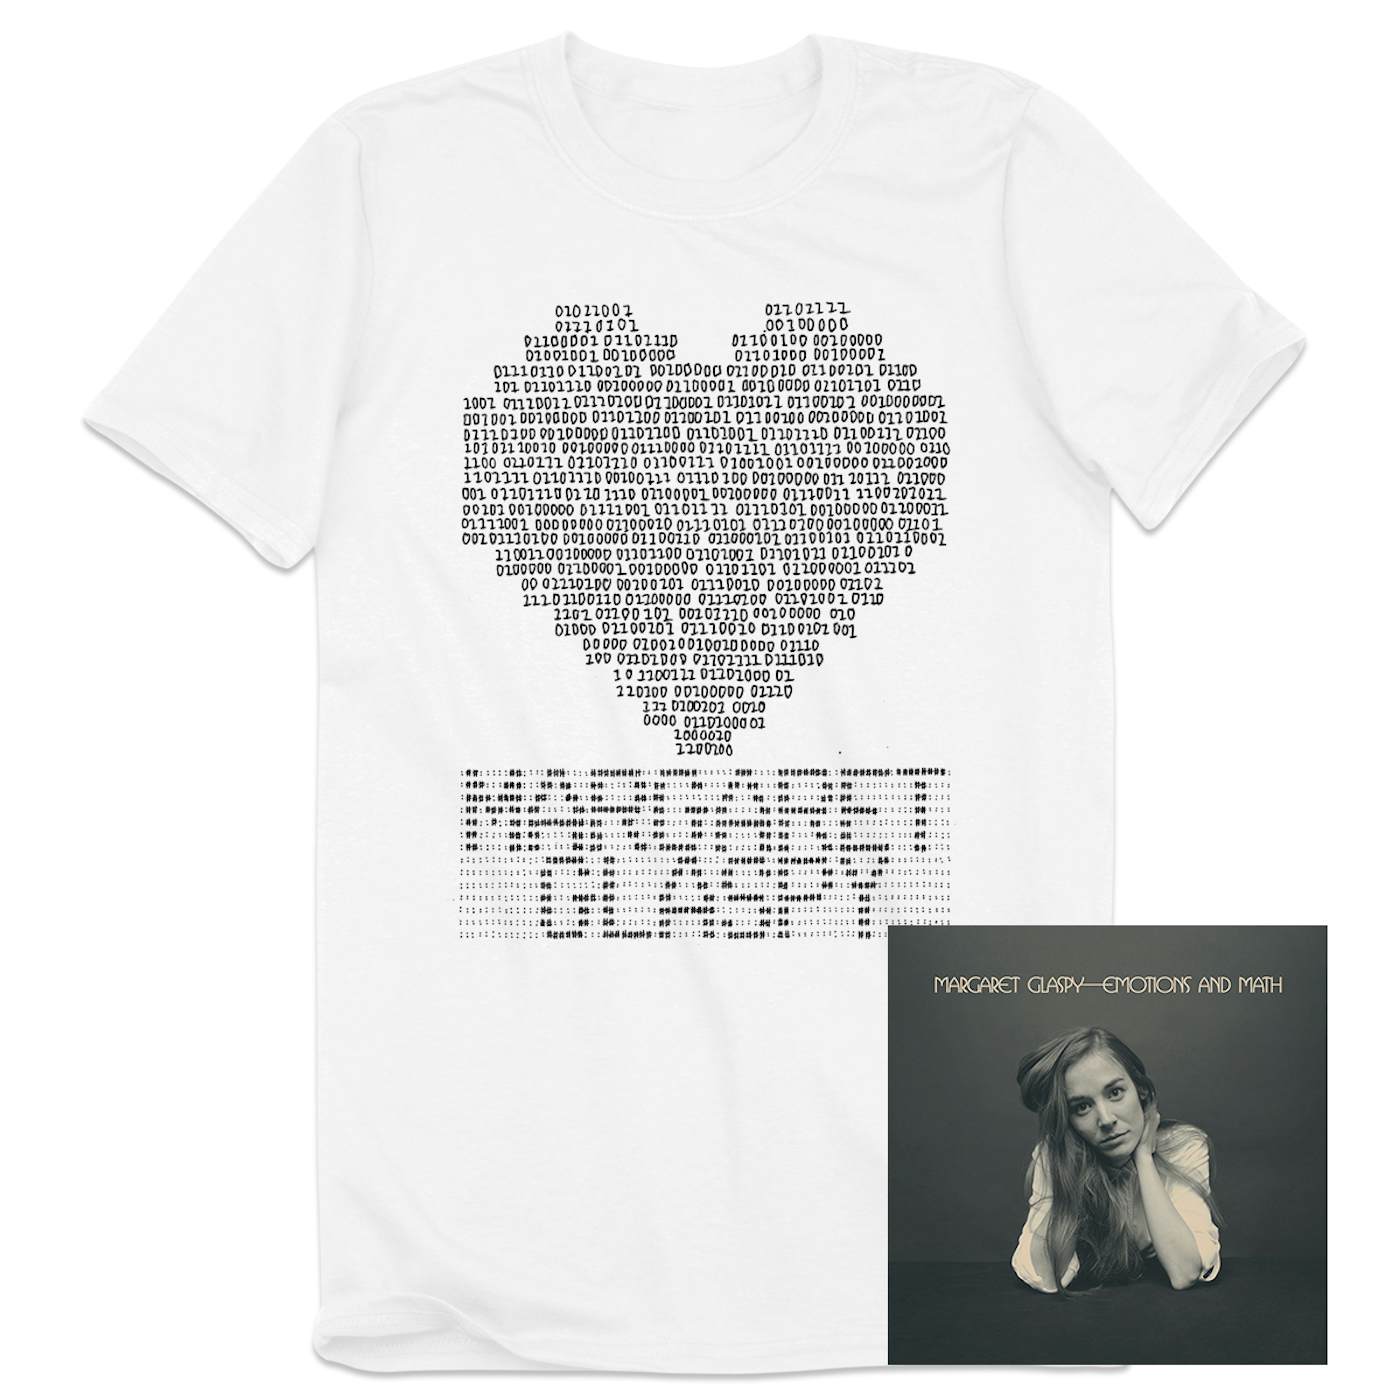 Margaret Glaspy T-Shirt & Media Bundle